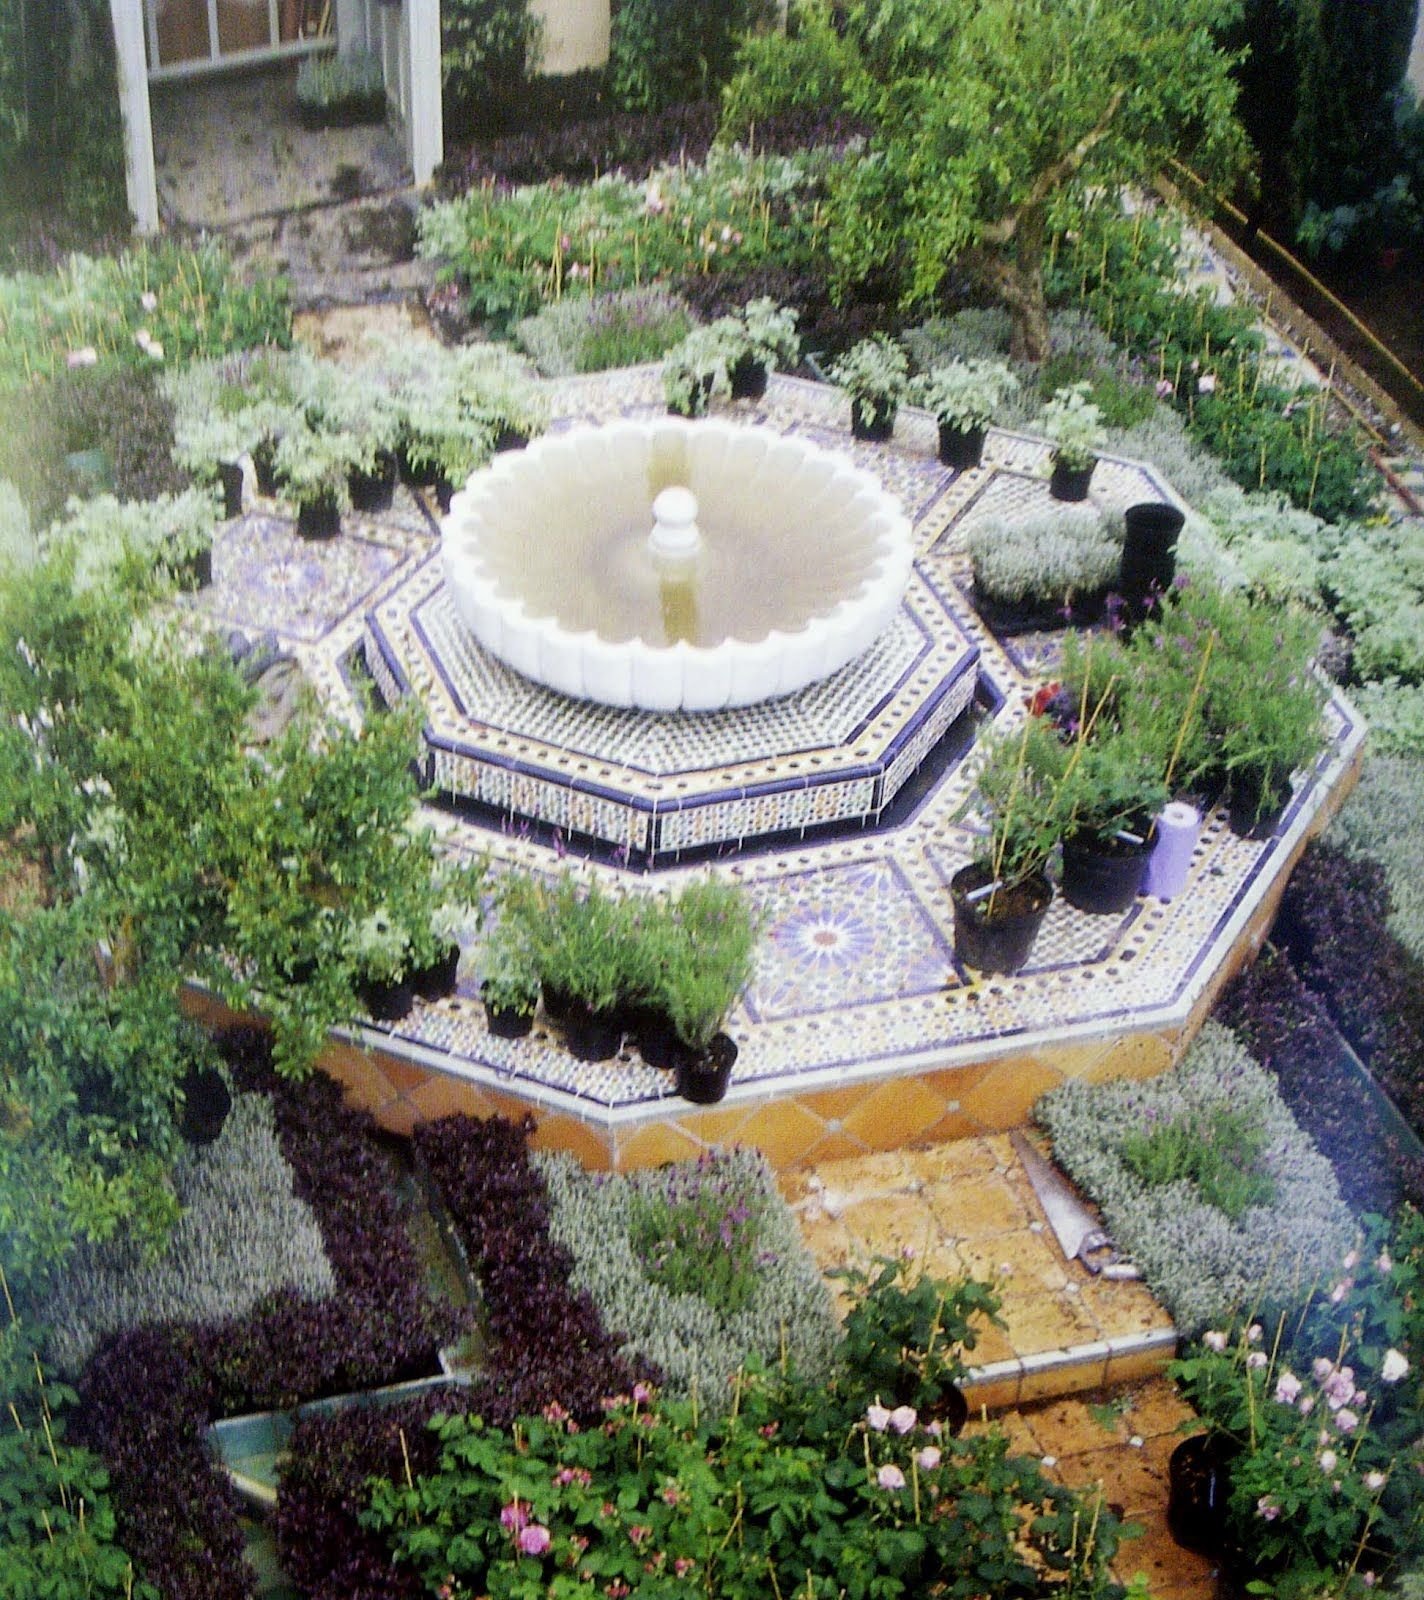 Мусульманский садик. Испано-мавританские сады террасы. Испано-мавританский стиль сада. Мусульманские сады мавританский стиль ландшафта. Испано мавританский сад план.